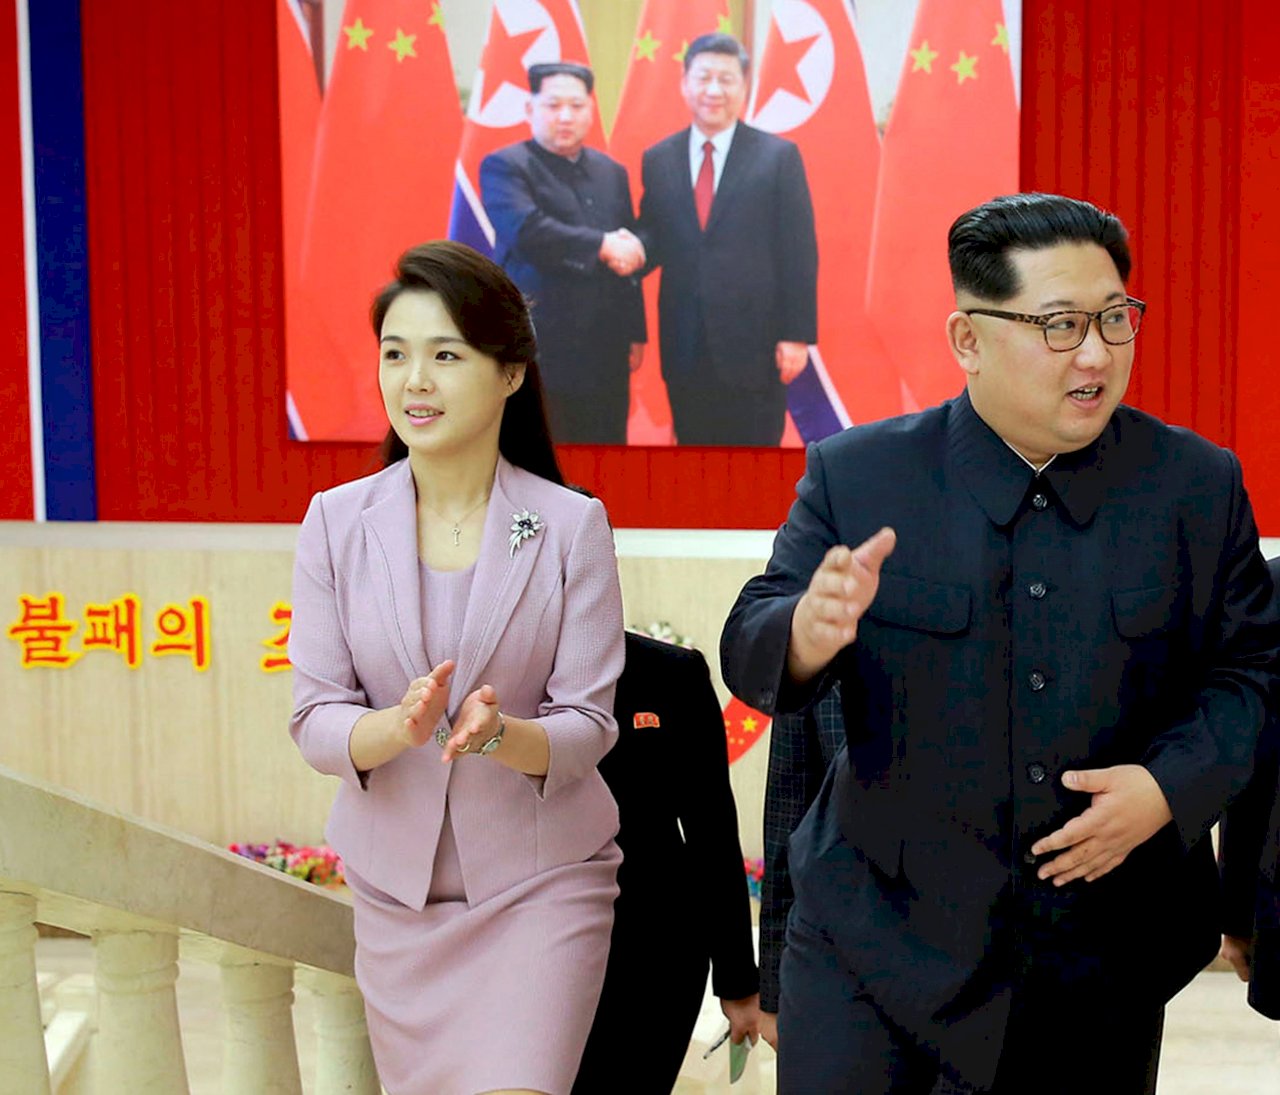 北韓第一夫人李雪主 峰會壓軸最吸睛